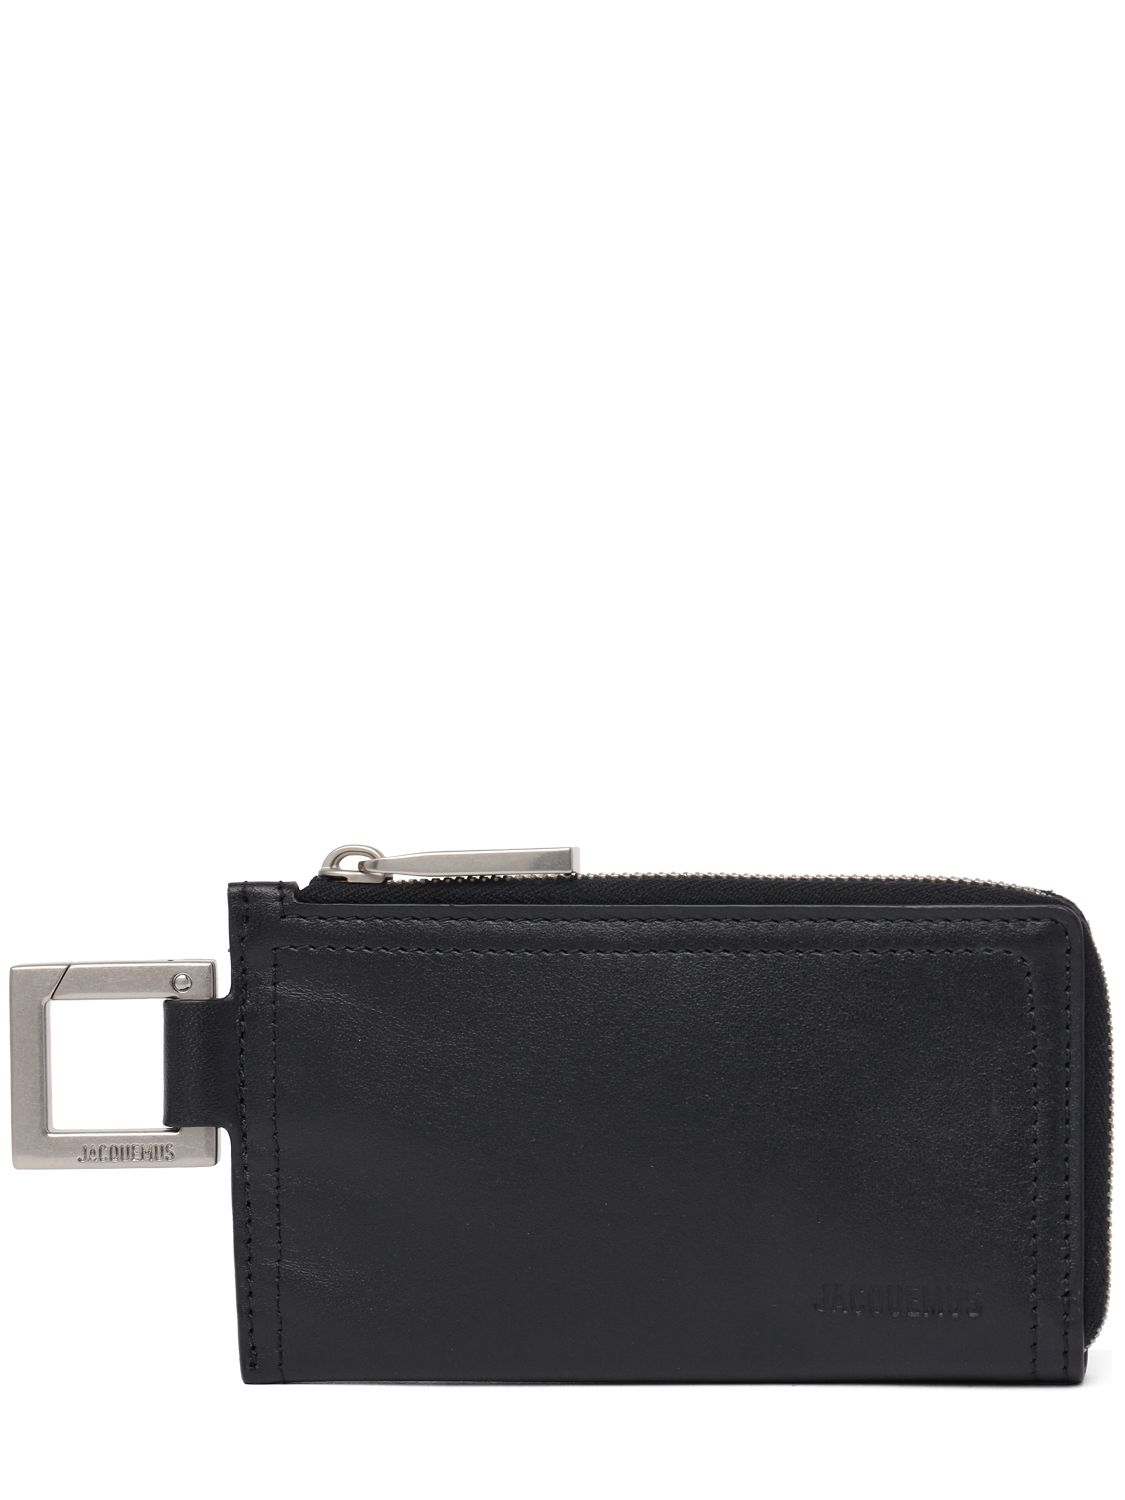 Image of Le Porte-zippé Cuerda Leather Wallet